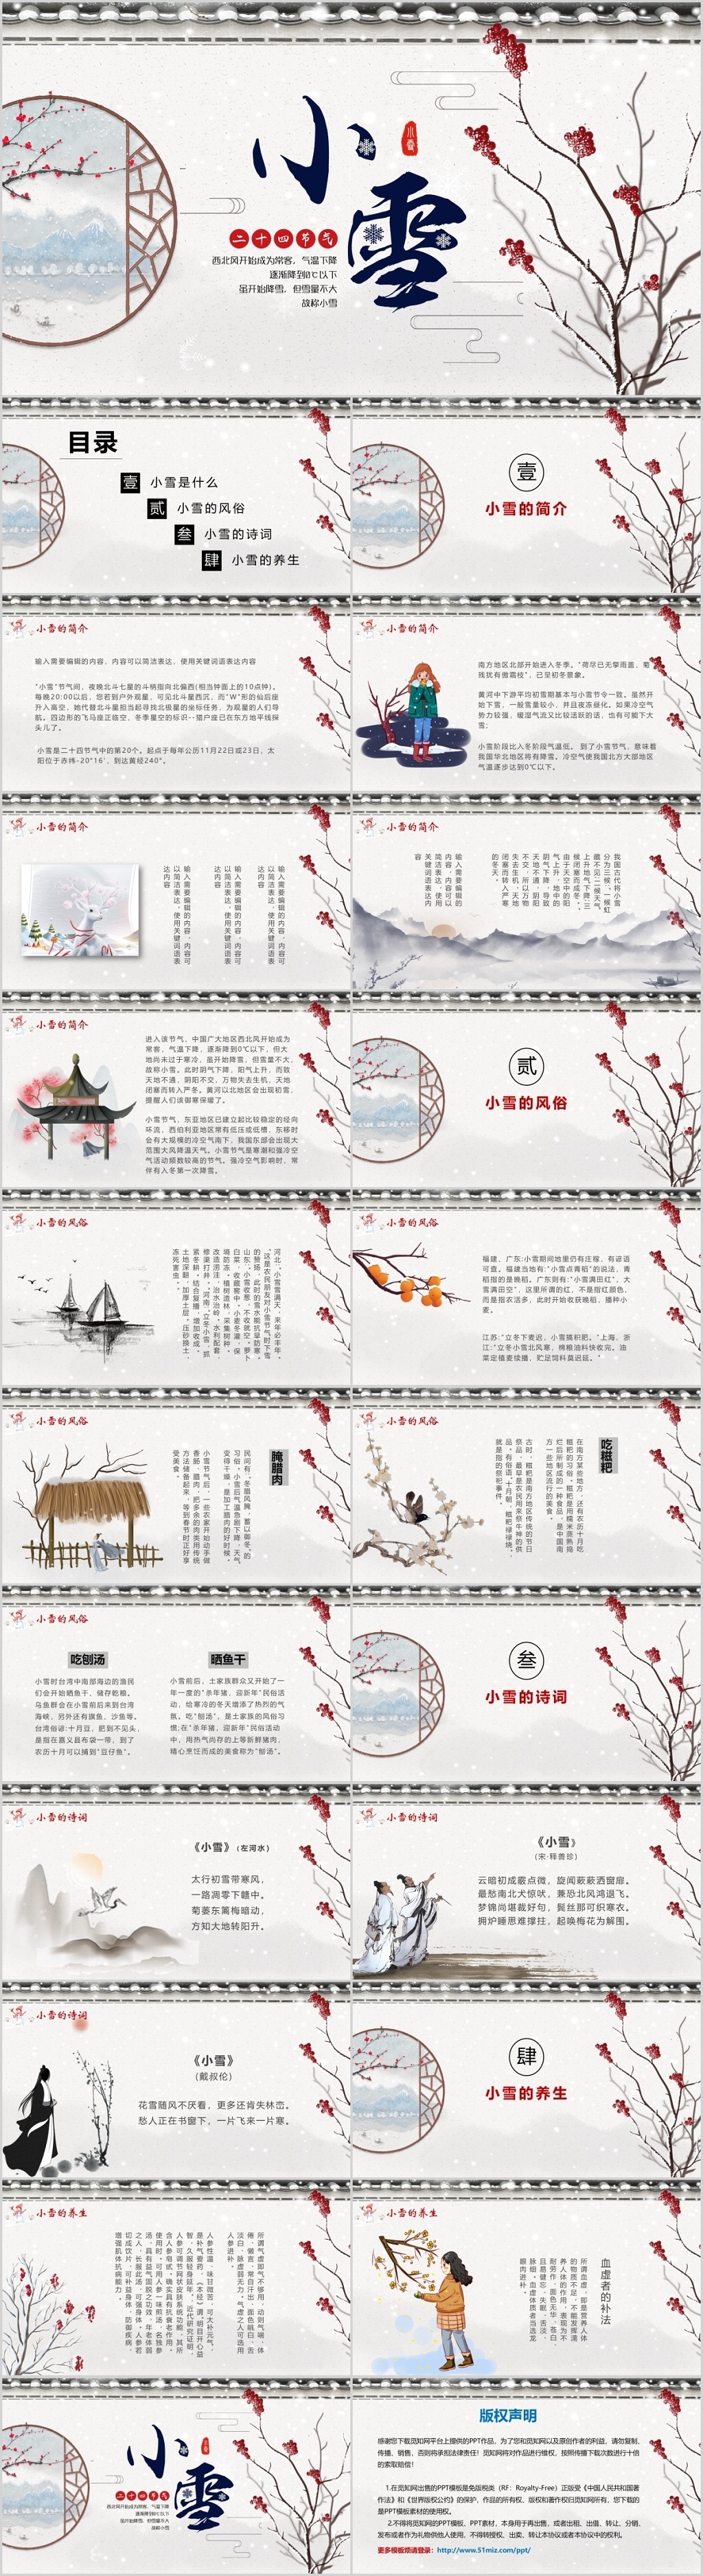 中国传统二十四节气之小雪介绍ppt模板